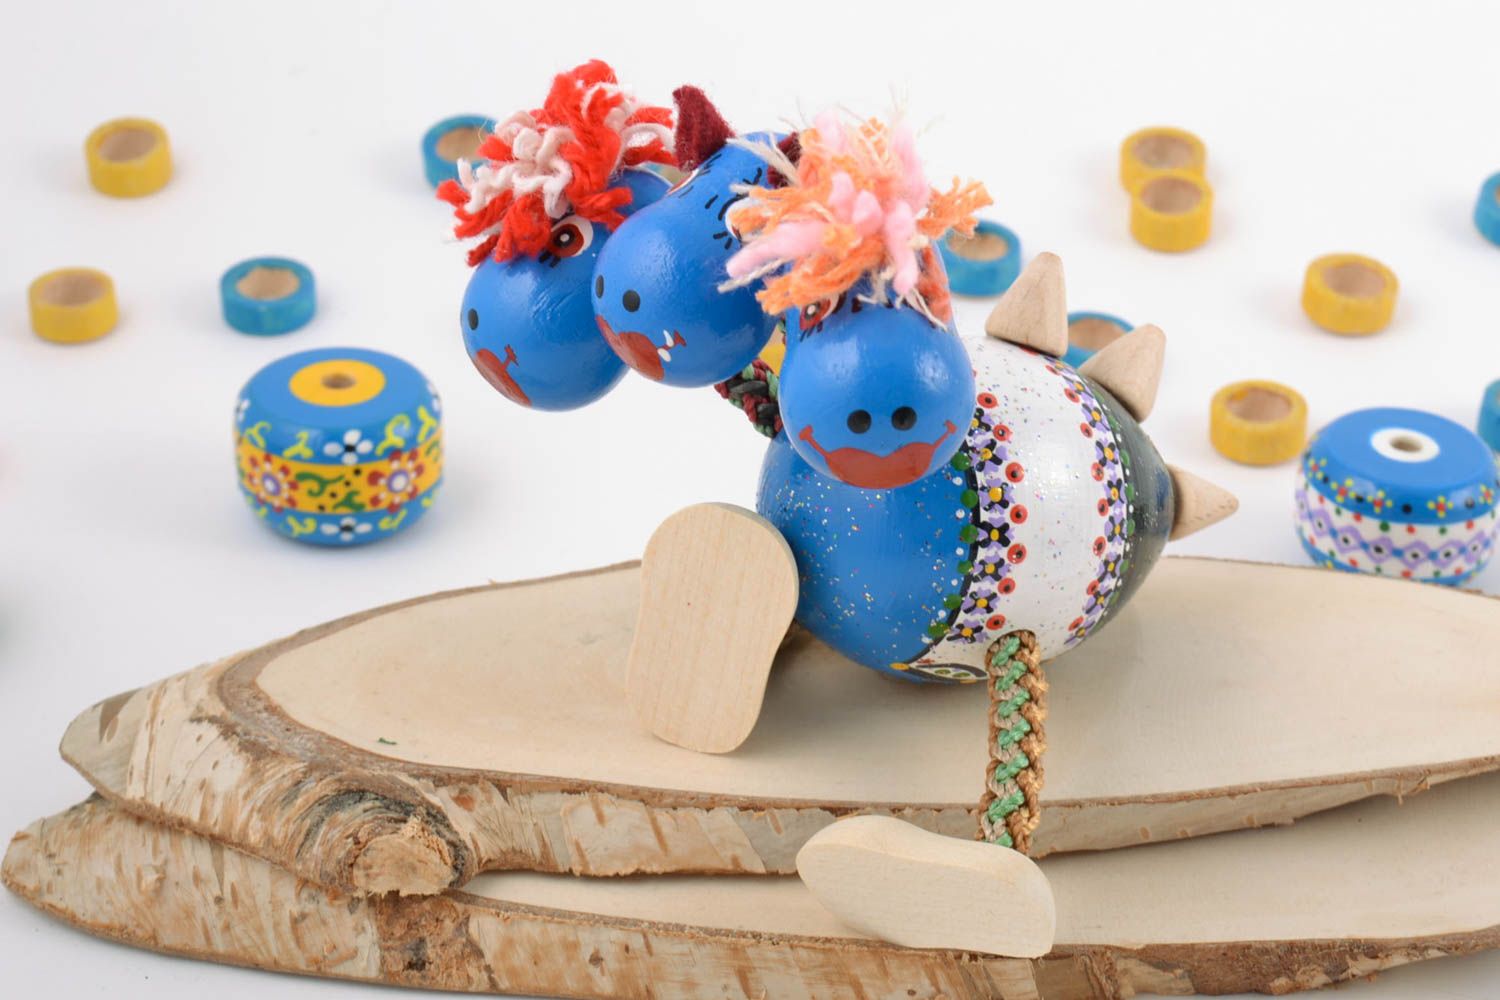 Деревянная эко игрушка дракончик синий расписанная красками ручной работы фото 1